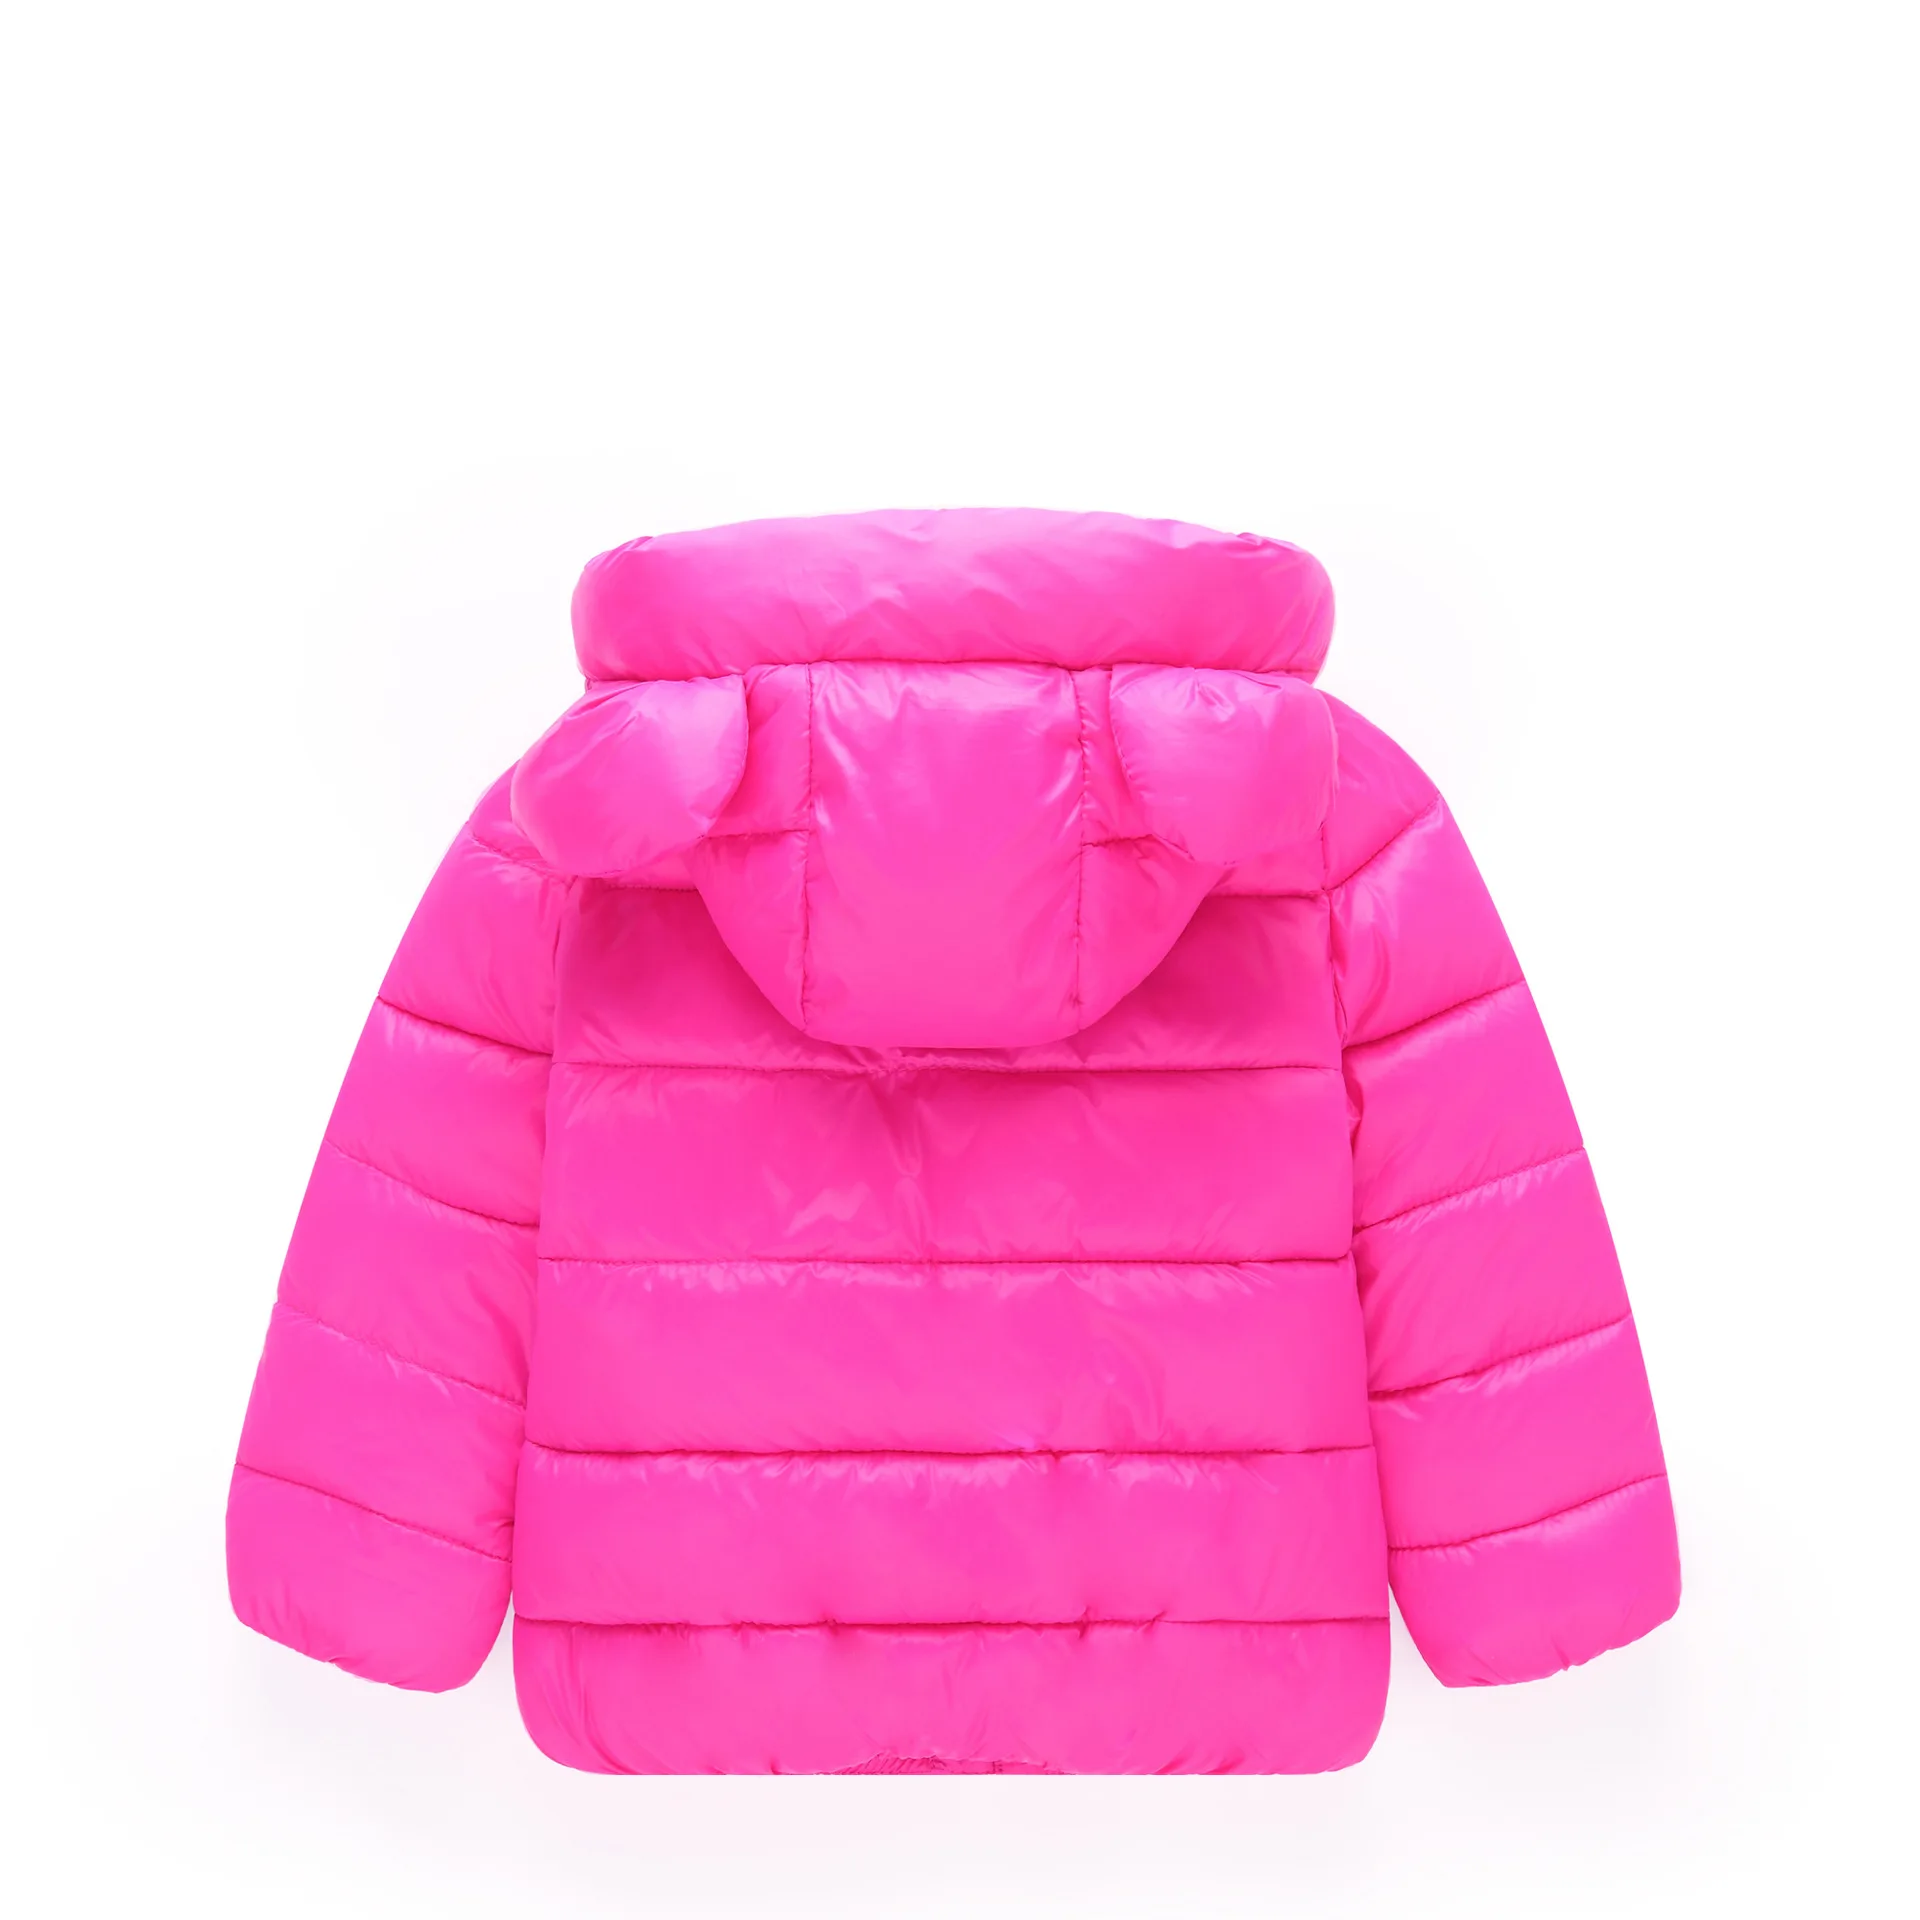 Детская куртка, верхняя одежда зимняя куртка для девочек и мальчиков, коллекция года, теплое пуховое пальто модная детская одежда с капюшоном и рисунком для детей возрастом от 3 до 6 лет